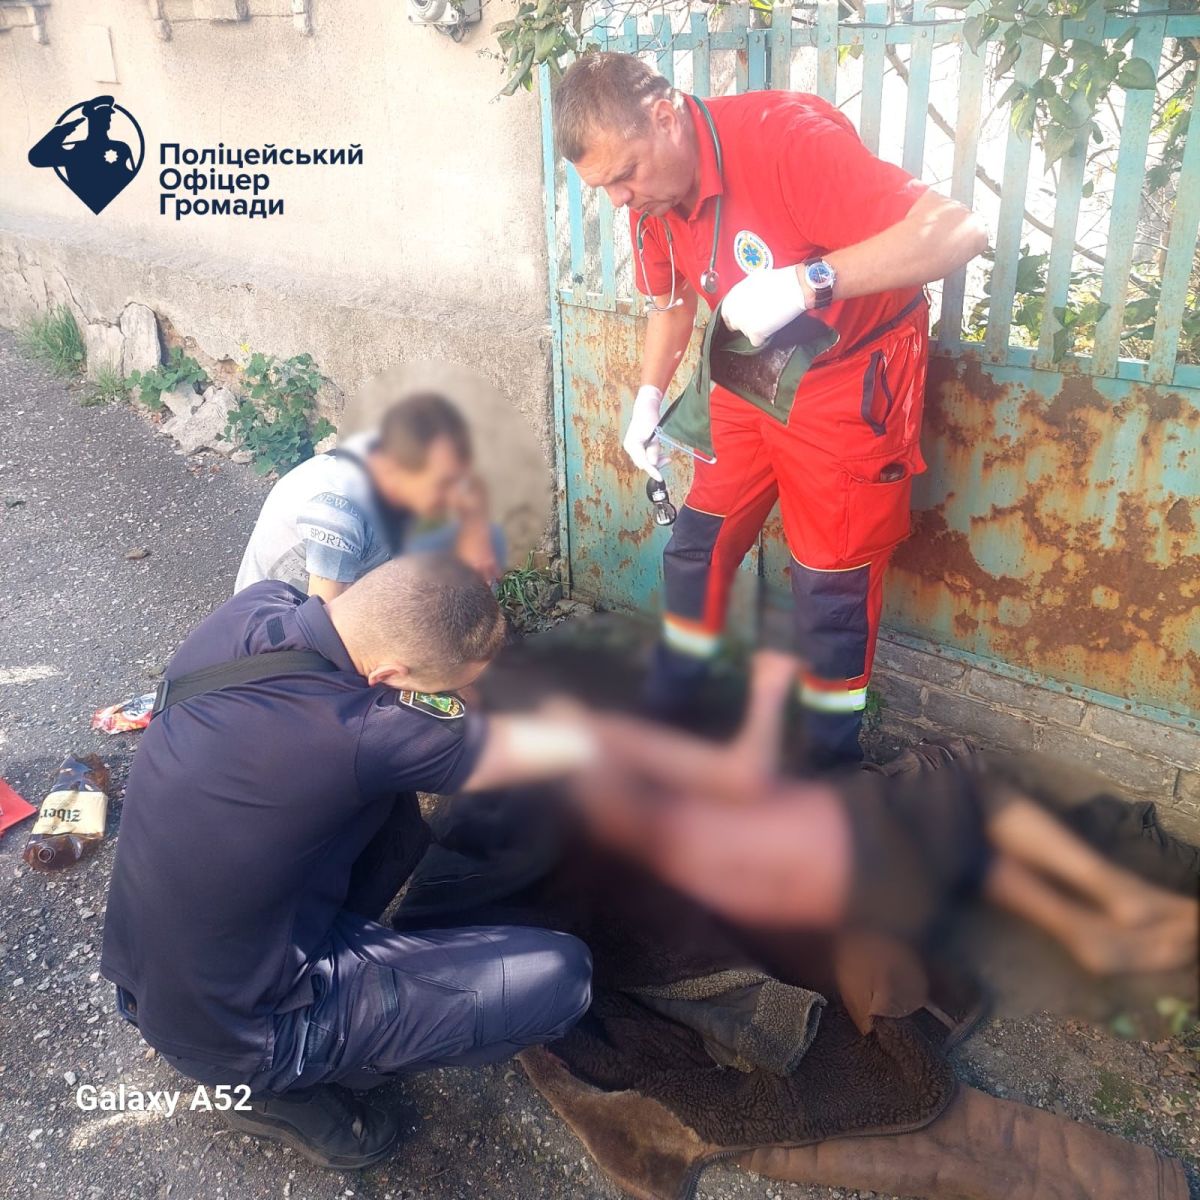 На Харківщині поліцейські офіцери Солоницівській громади допомогли чоловікові, якому стало зле на вулиці